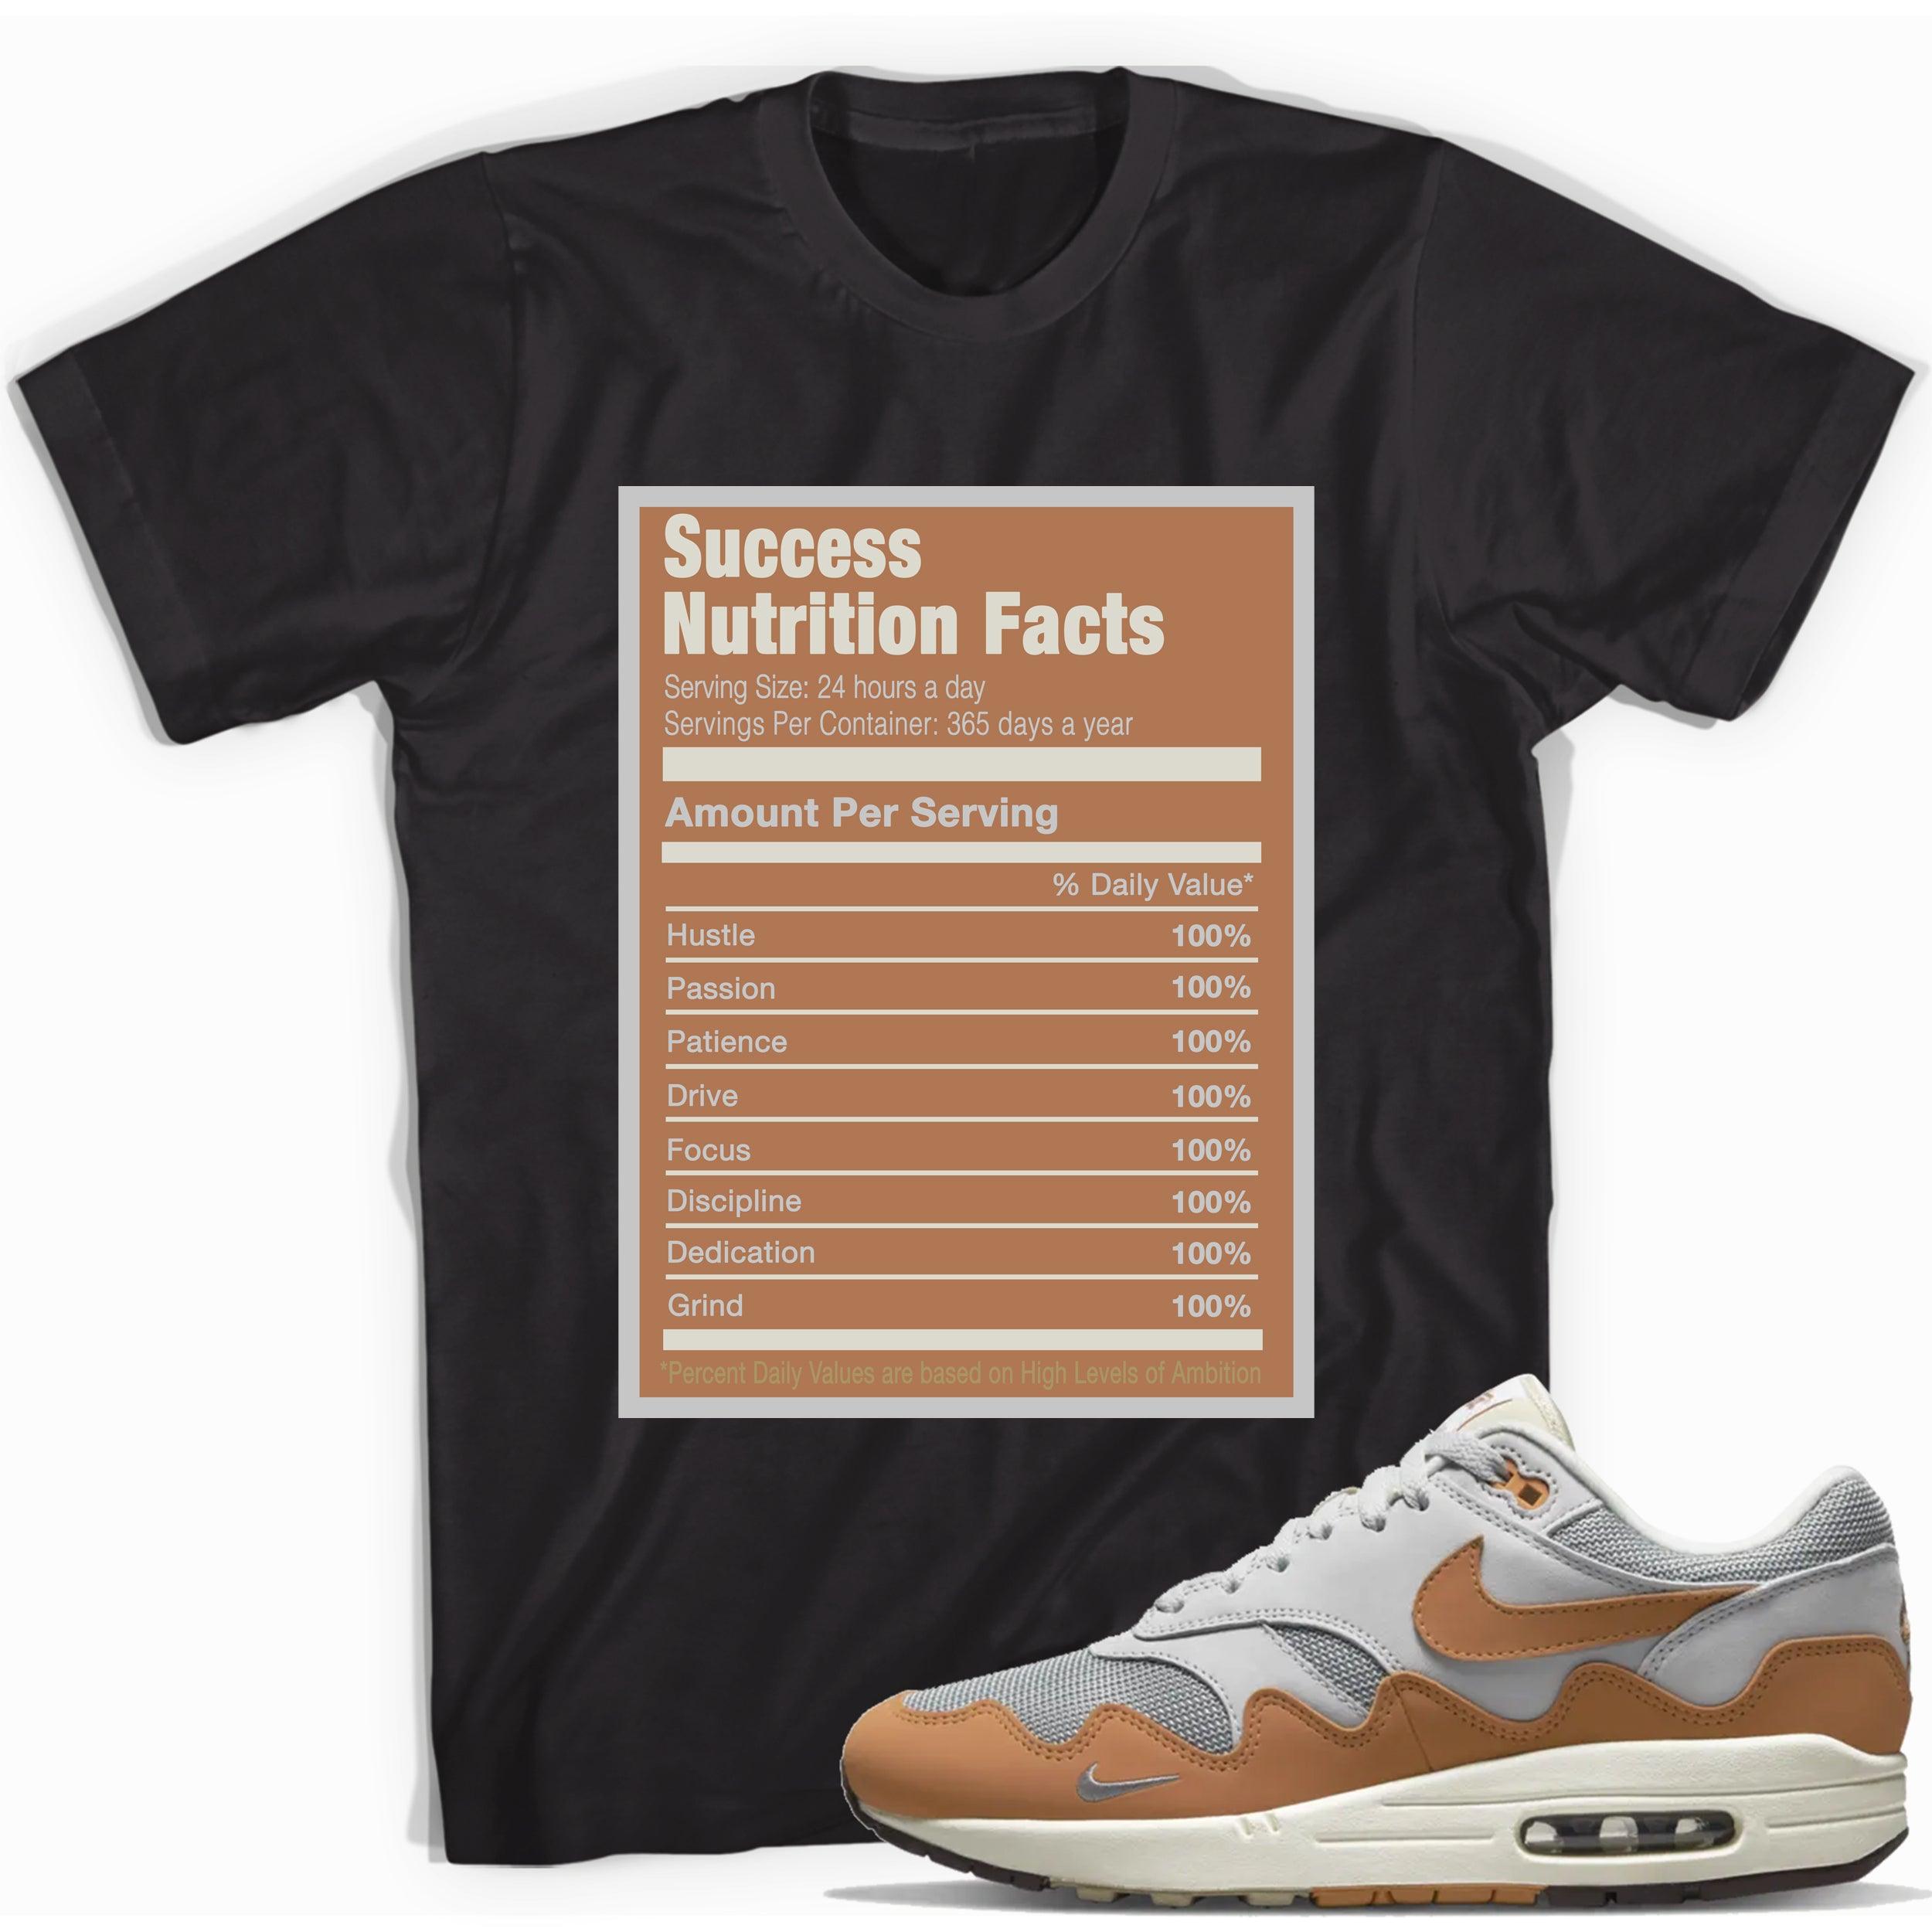 Success Nutrition Facts Shirt Air Max 1 x Patta photo